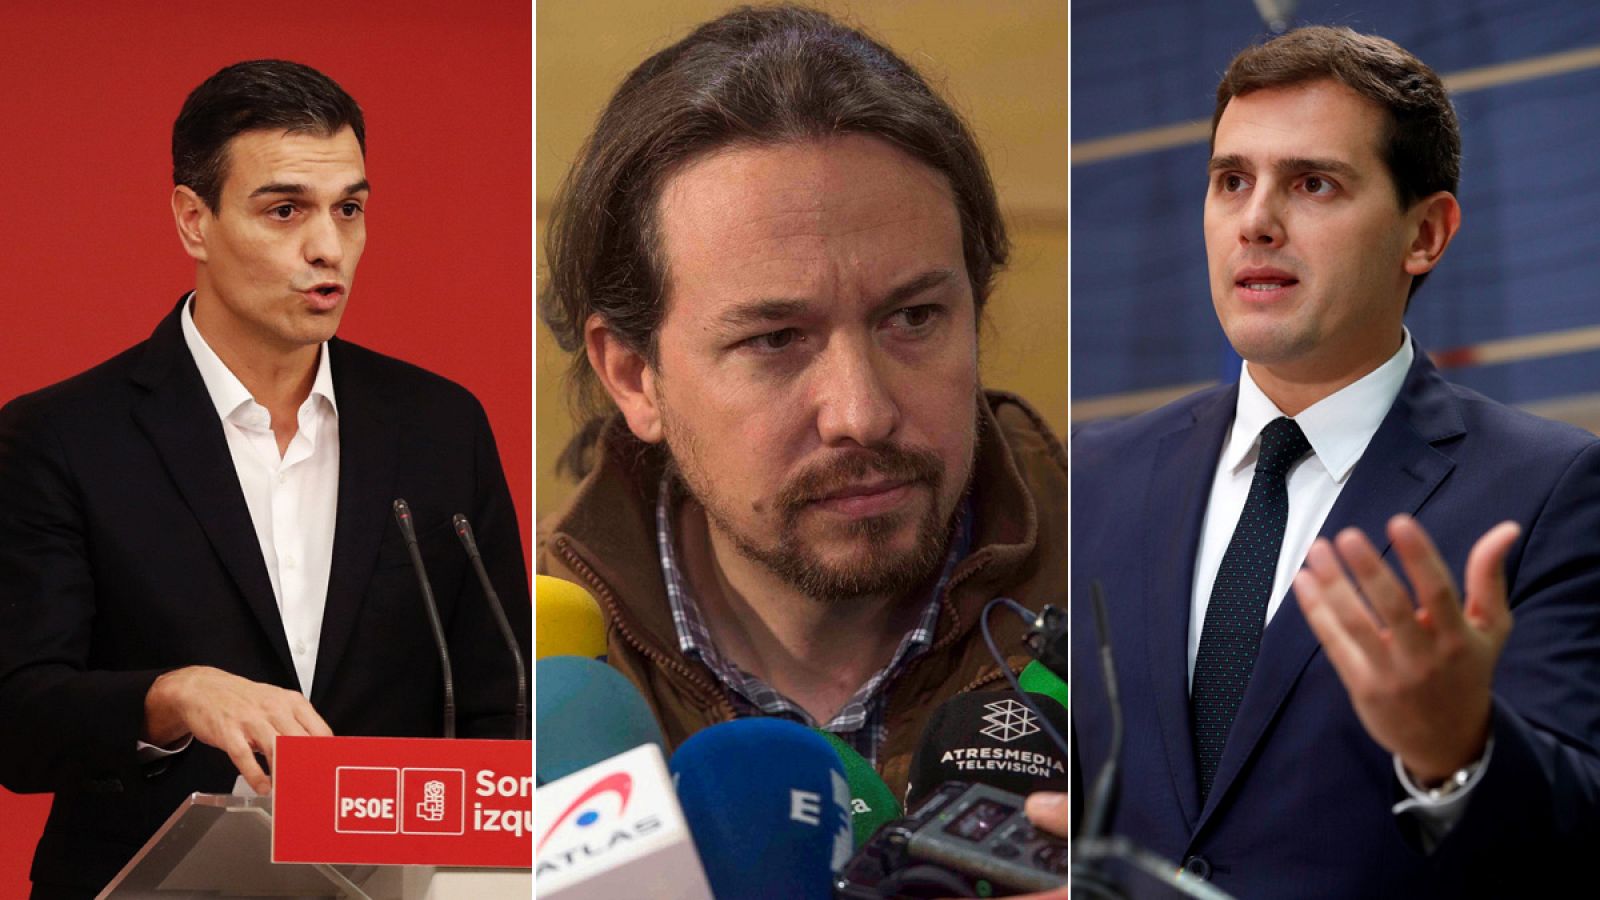 Los líderes de PSOE, Podemos y Ciudadanos, Pedro Sánchez, Pablo Iglesias y Albert Rivera